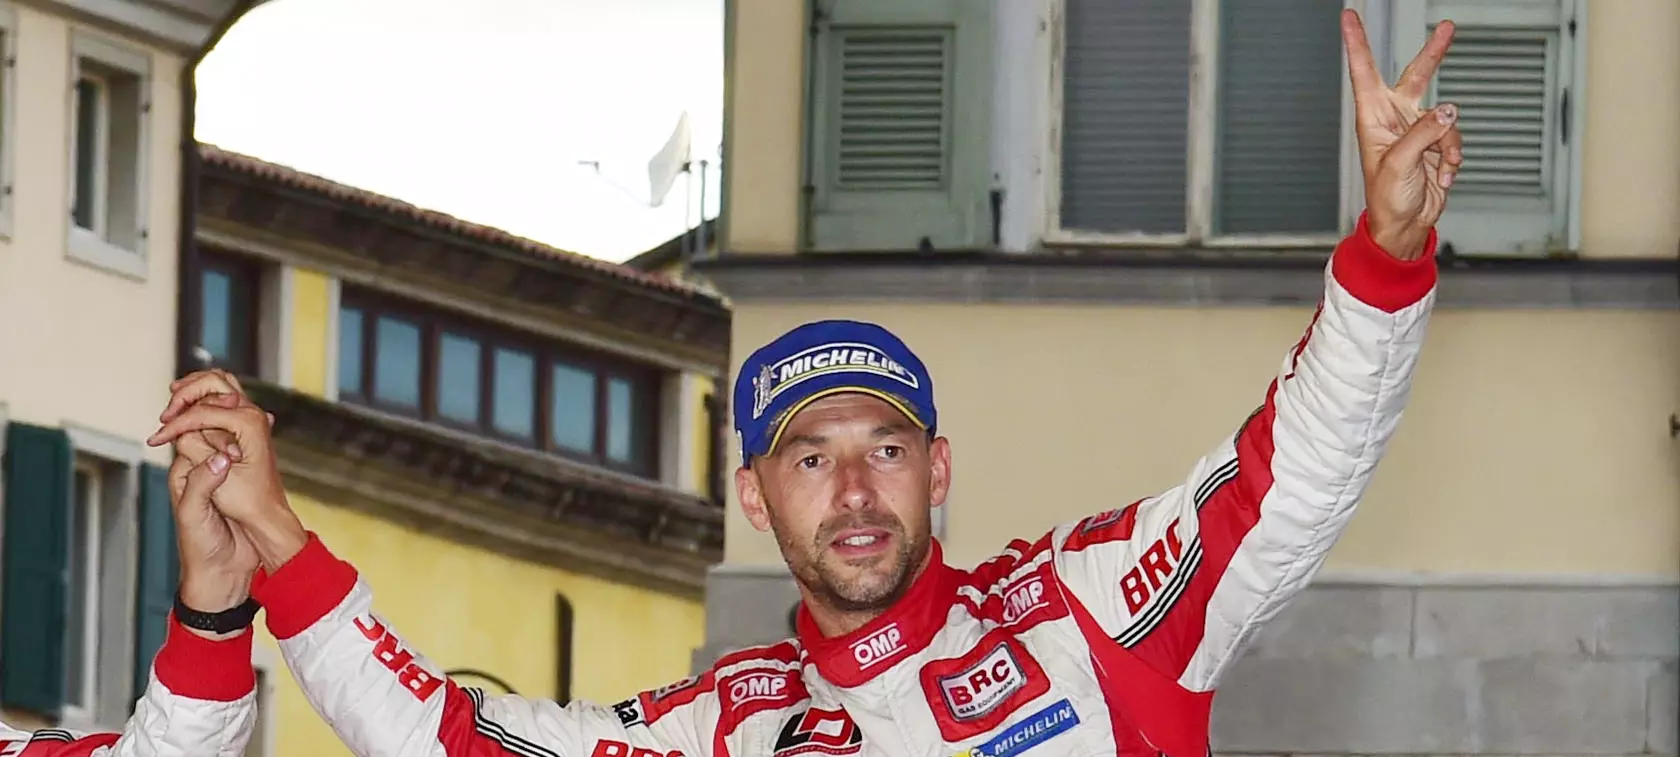 Basso w Fieście LPG rajdowym mistrzem Włoch?